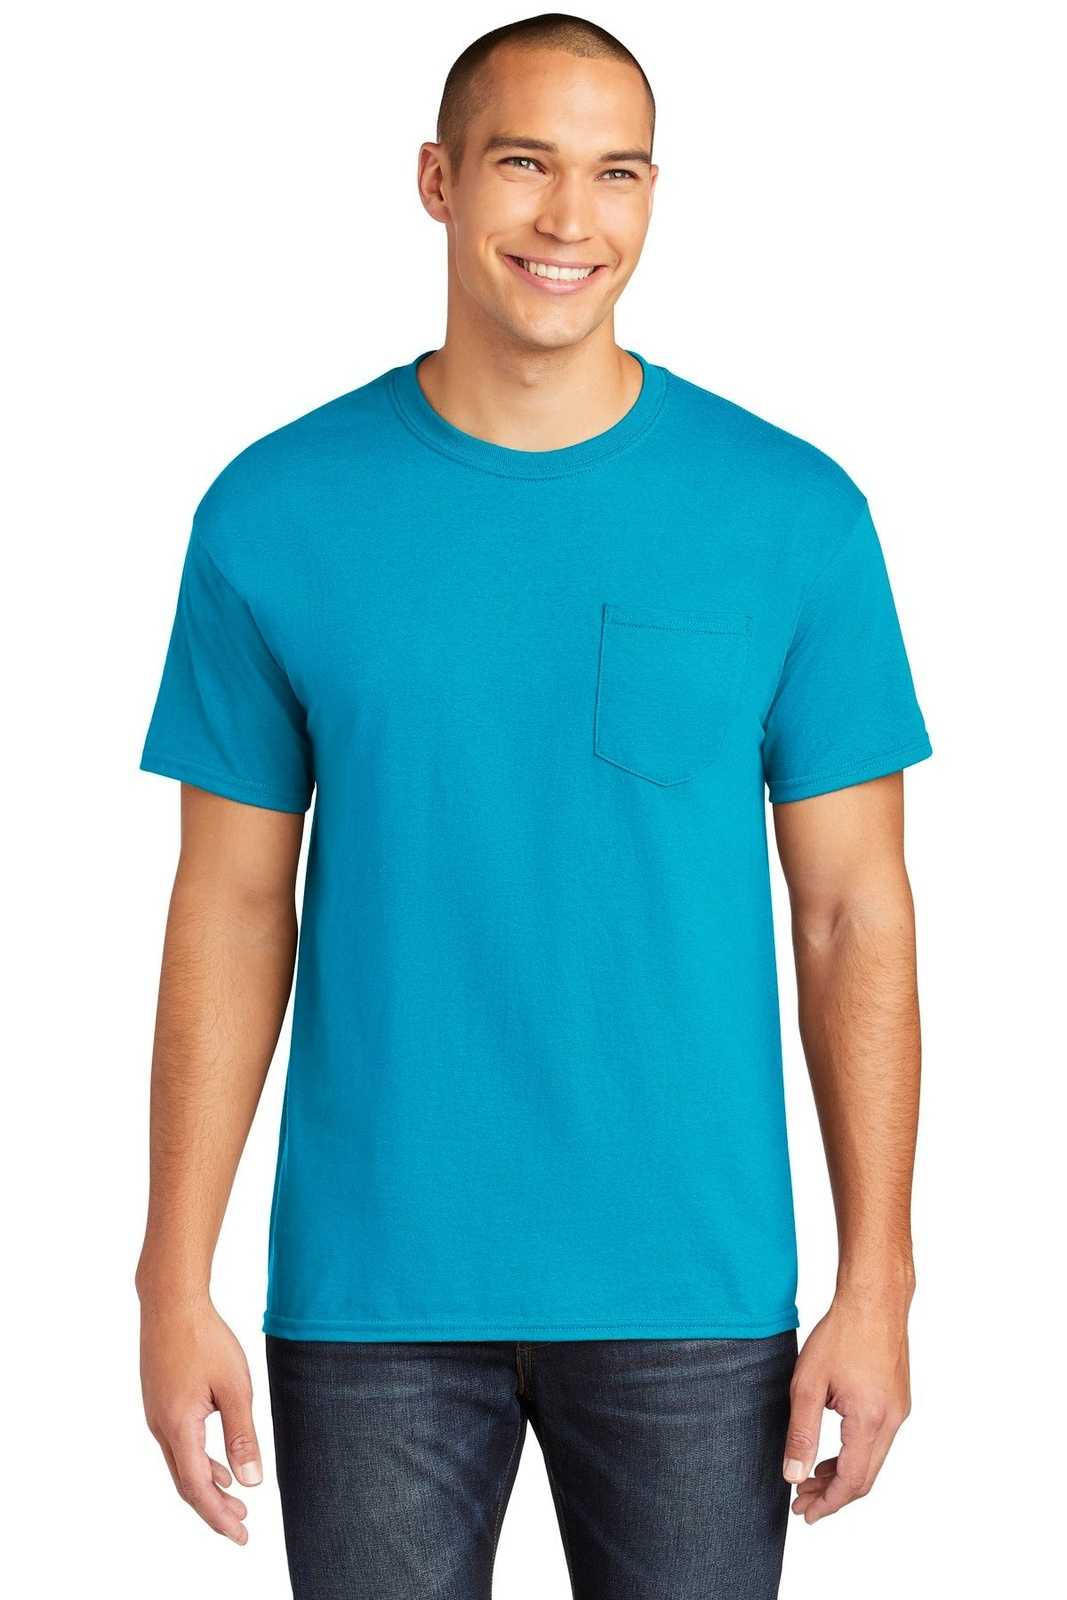 Gildan 5300 Heavy Cotton 100% Cotton Pocket T-Shirt - Sapphire - HIT a Double